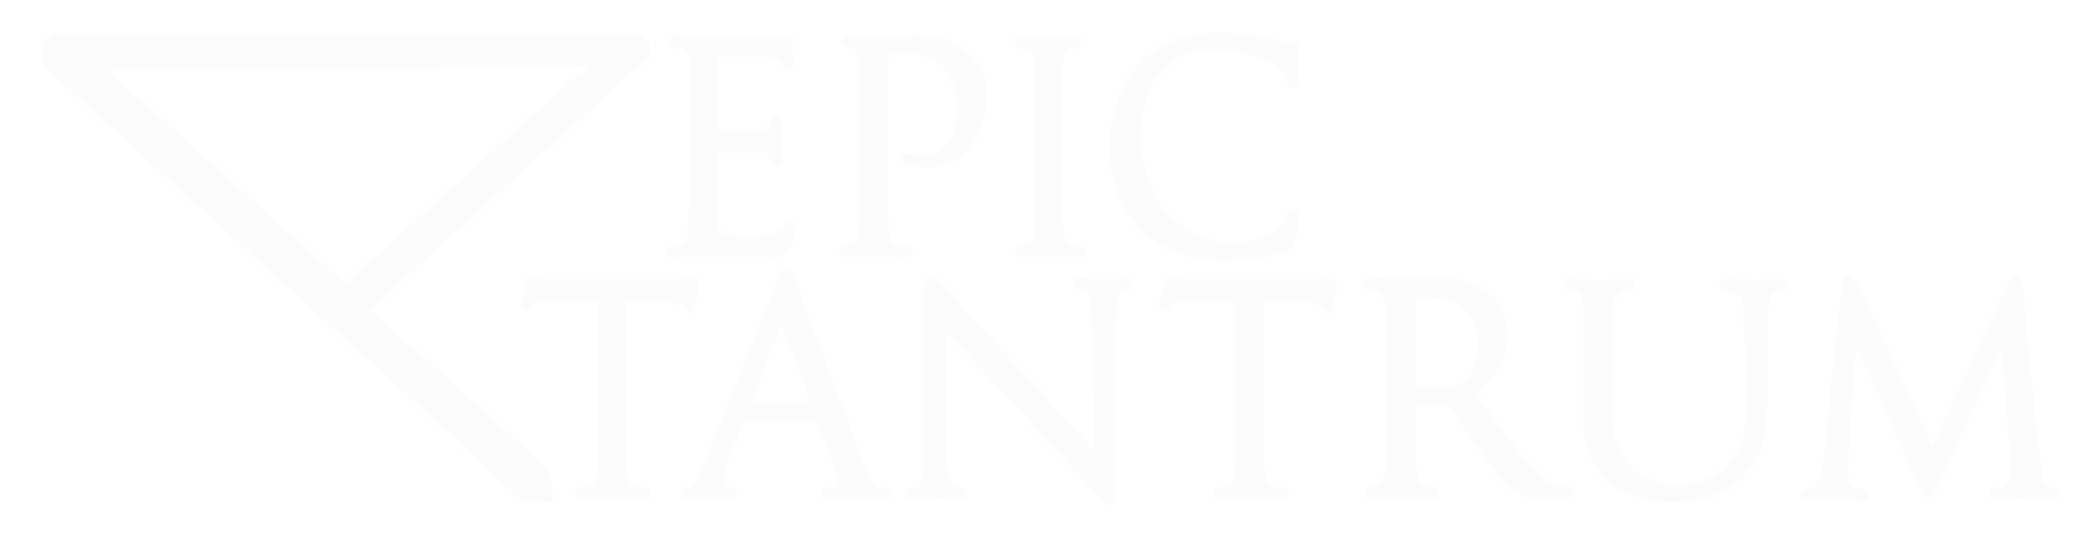 Epic Tantrum